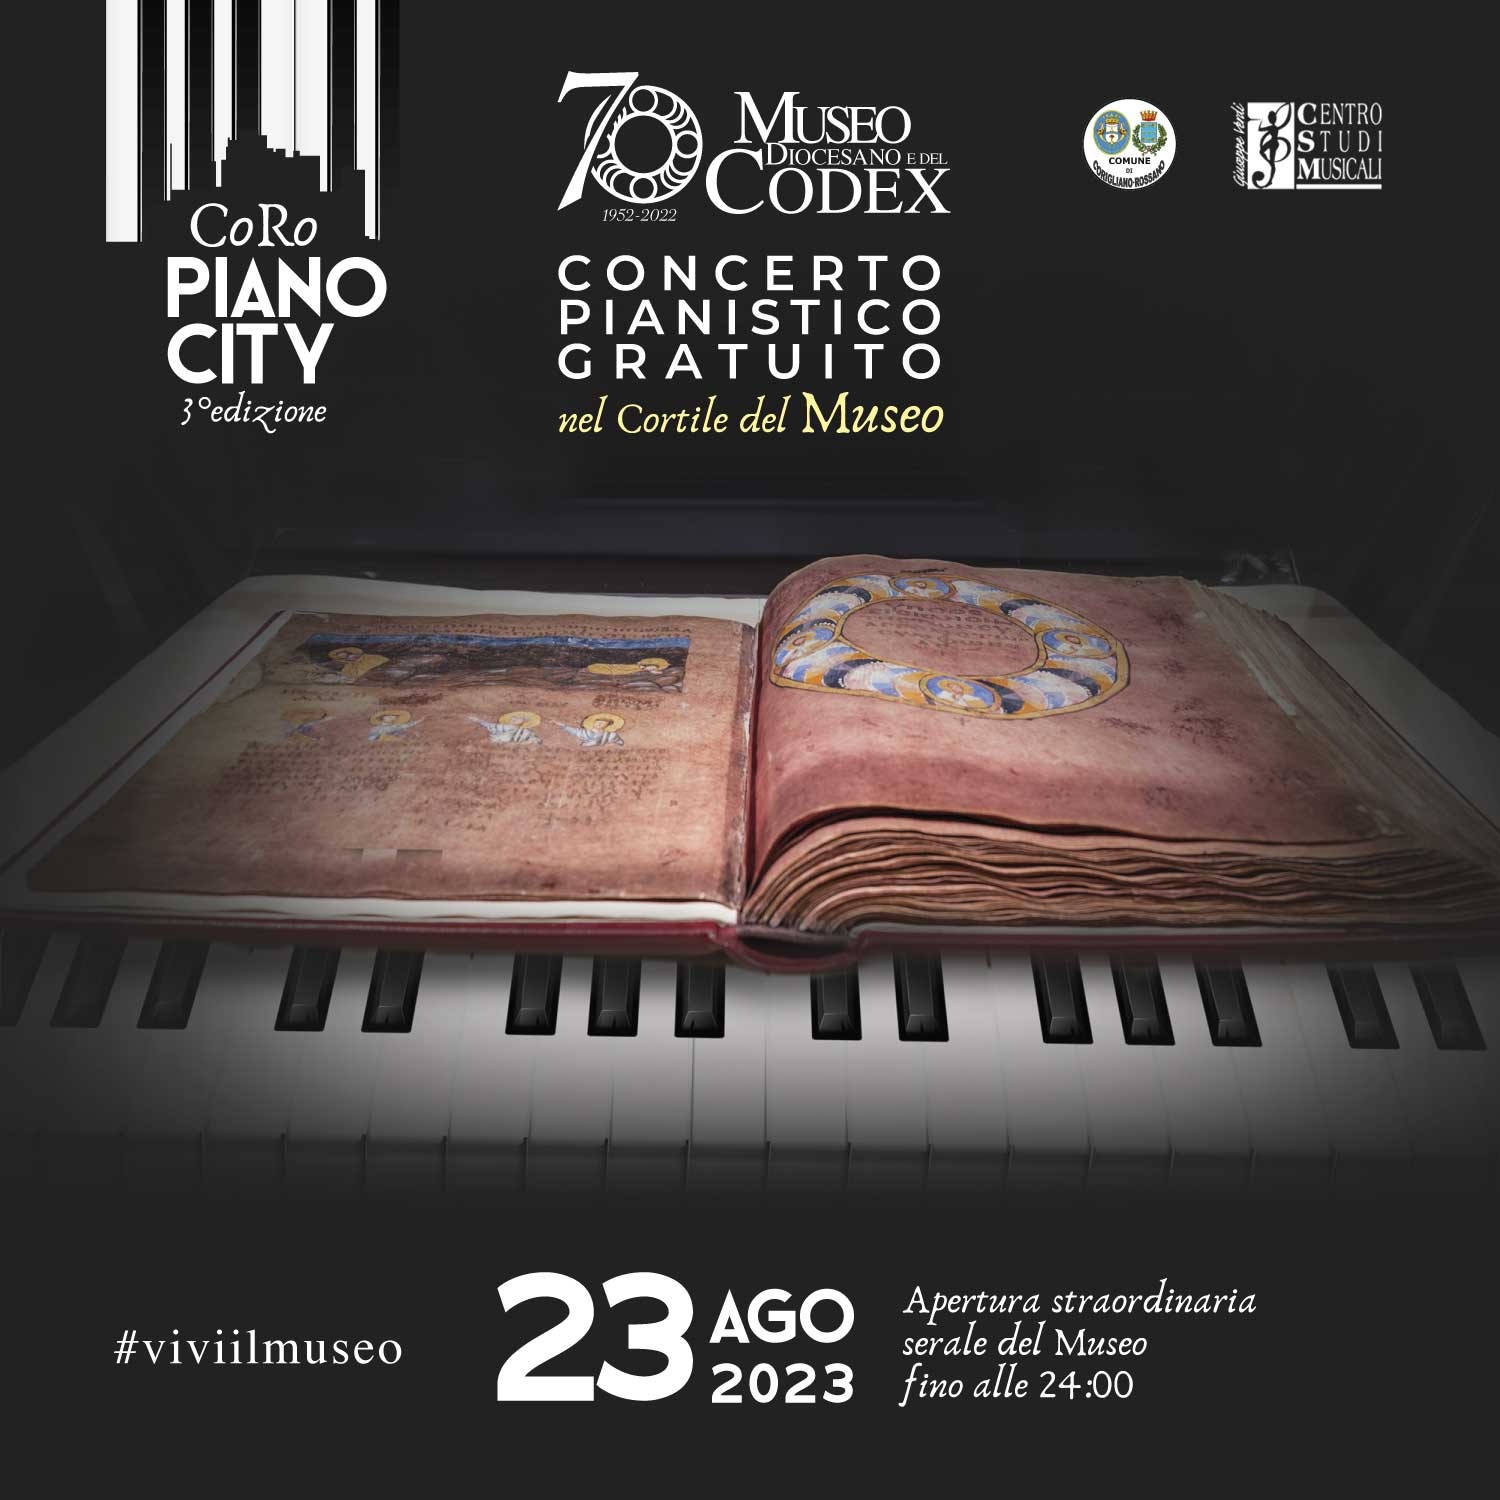 CoRo Piano City - Concerto pianistico al Museo Diocesano e del Codex